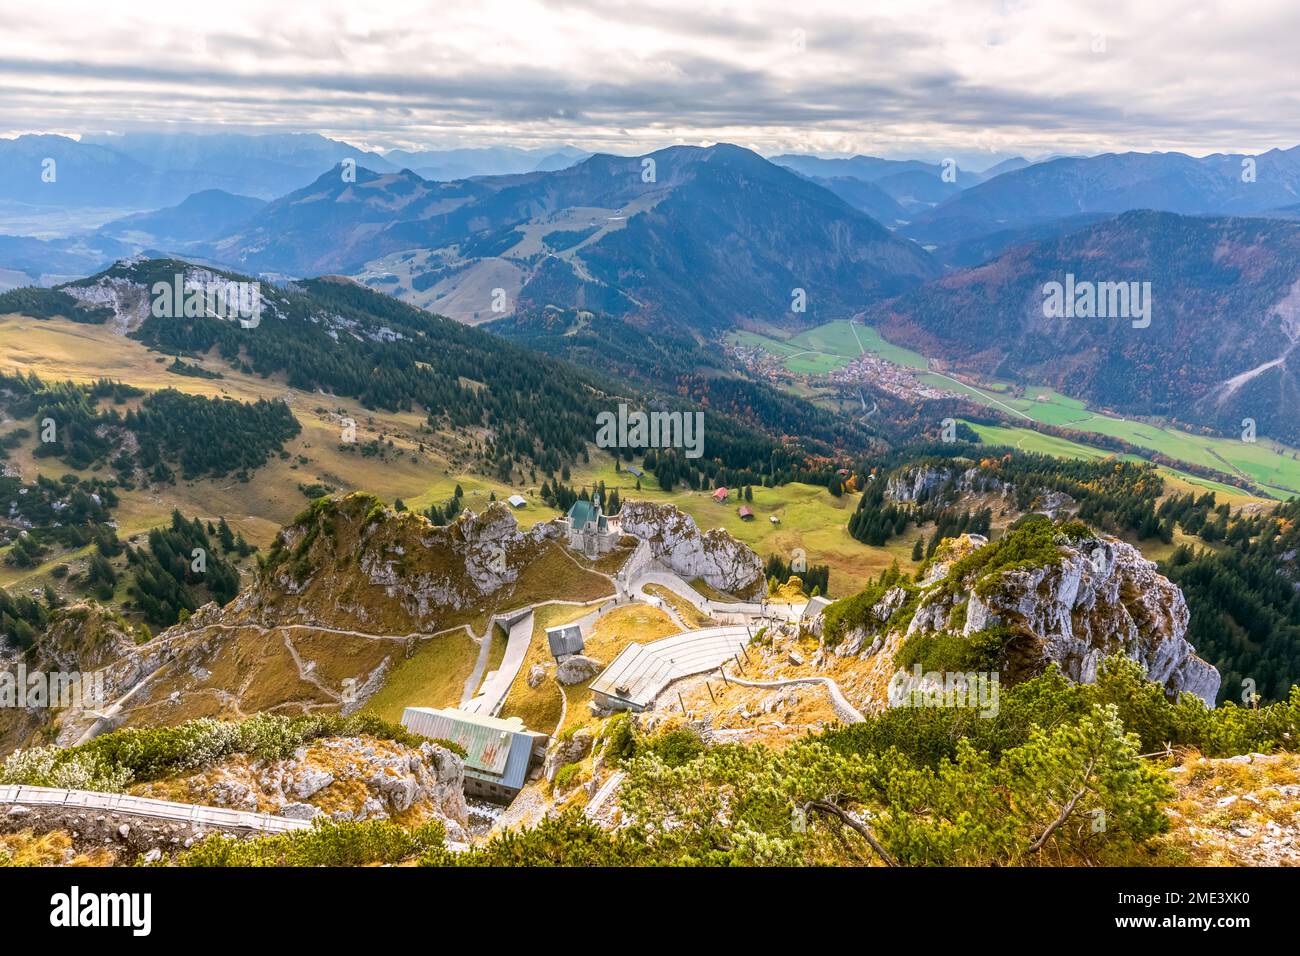 Germania, Baviera, vista panoramica dalla cima del monte Wendelstein Foto Stock